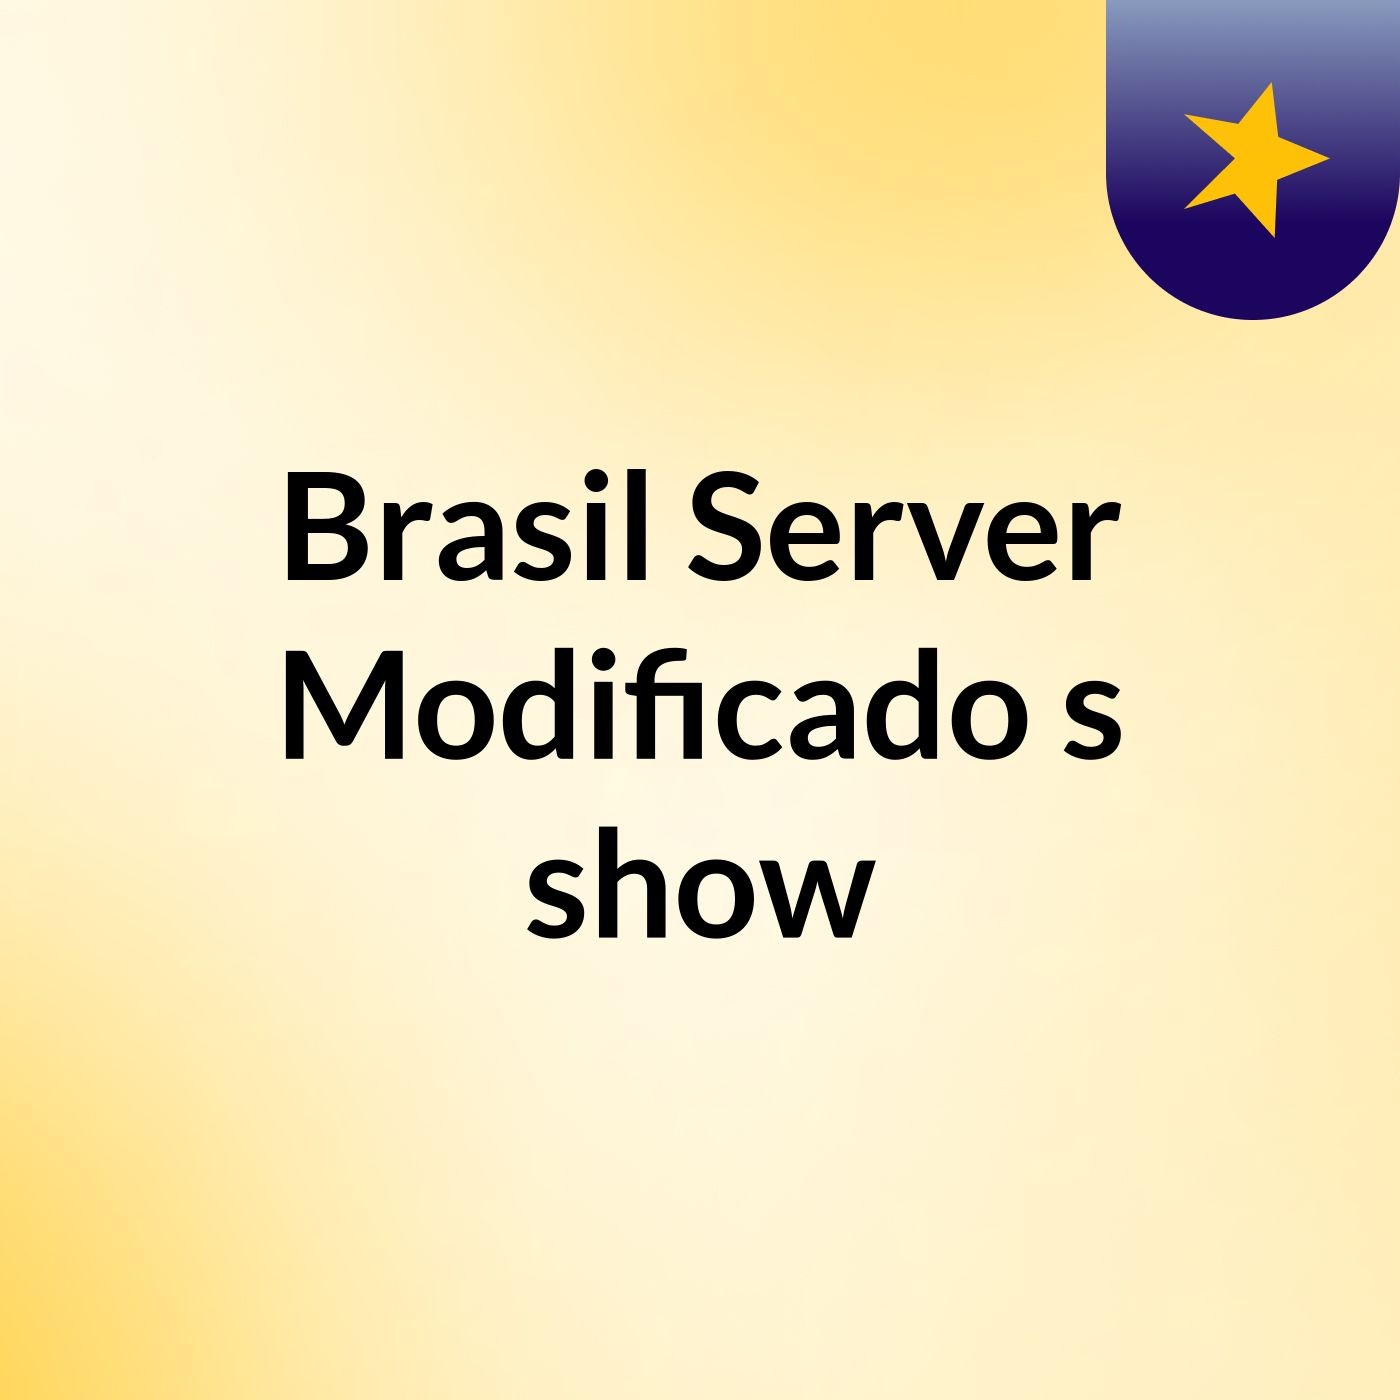 Brasil Server Modificado's show